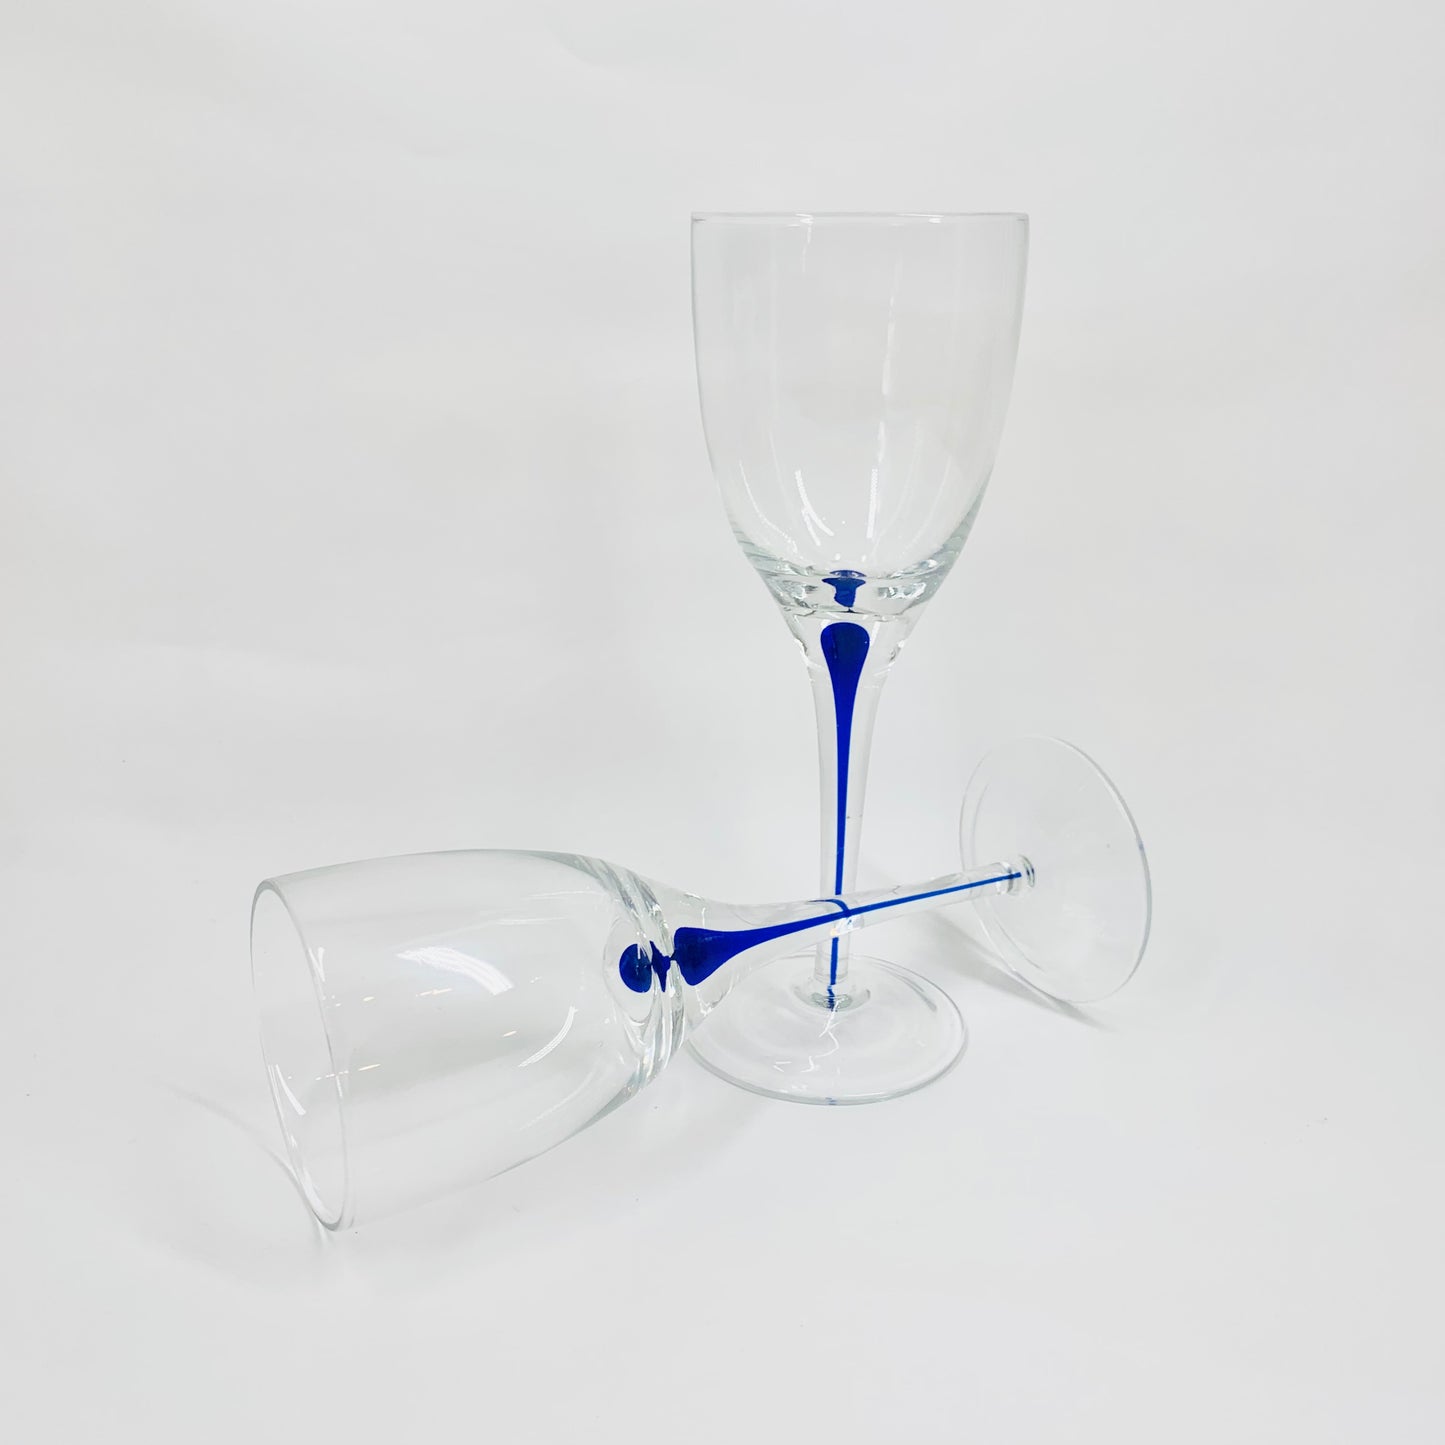 Vintage Kosta Boda hand made art glass wine glasses with encased cobalt ink